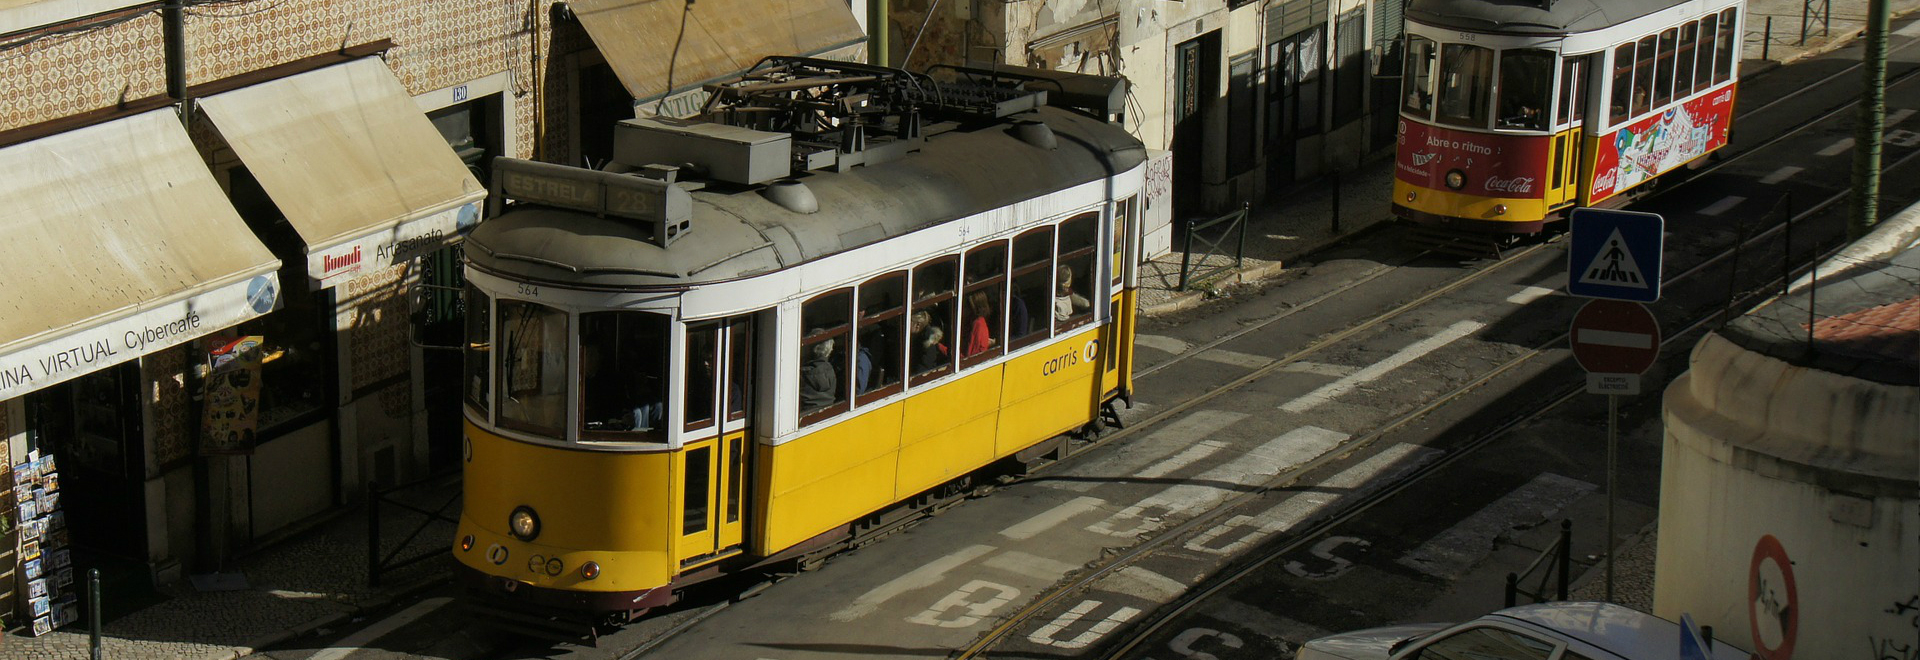 Z - O melhor de Lisboa